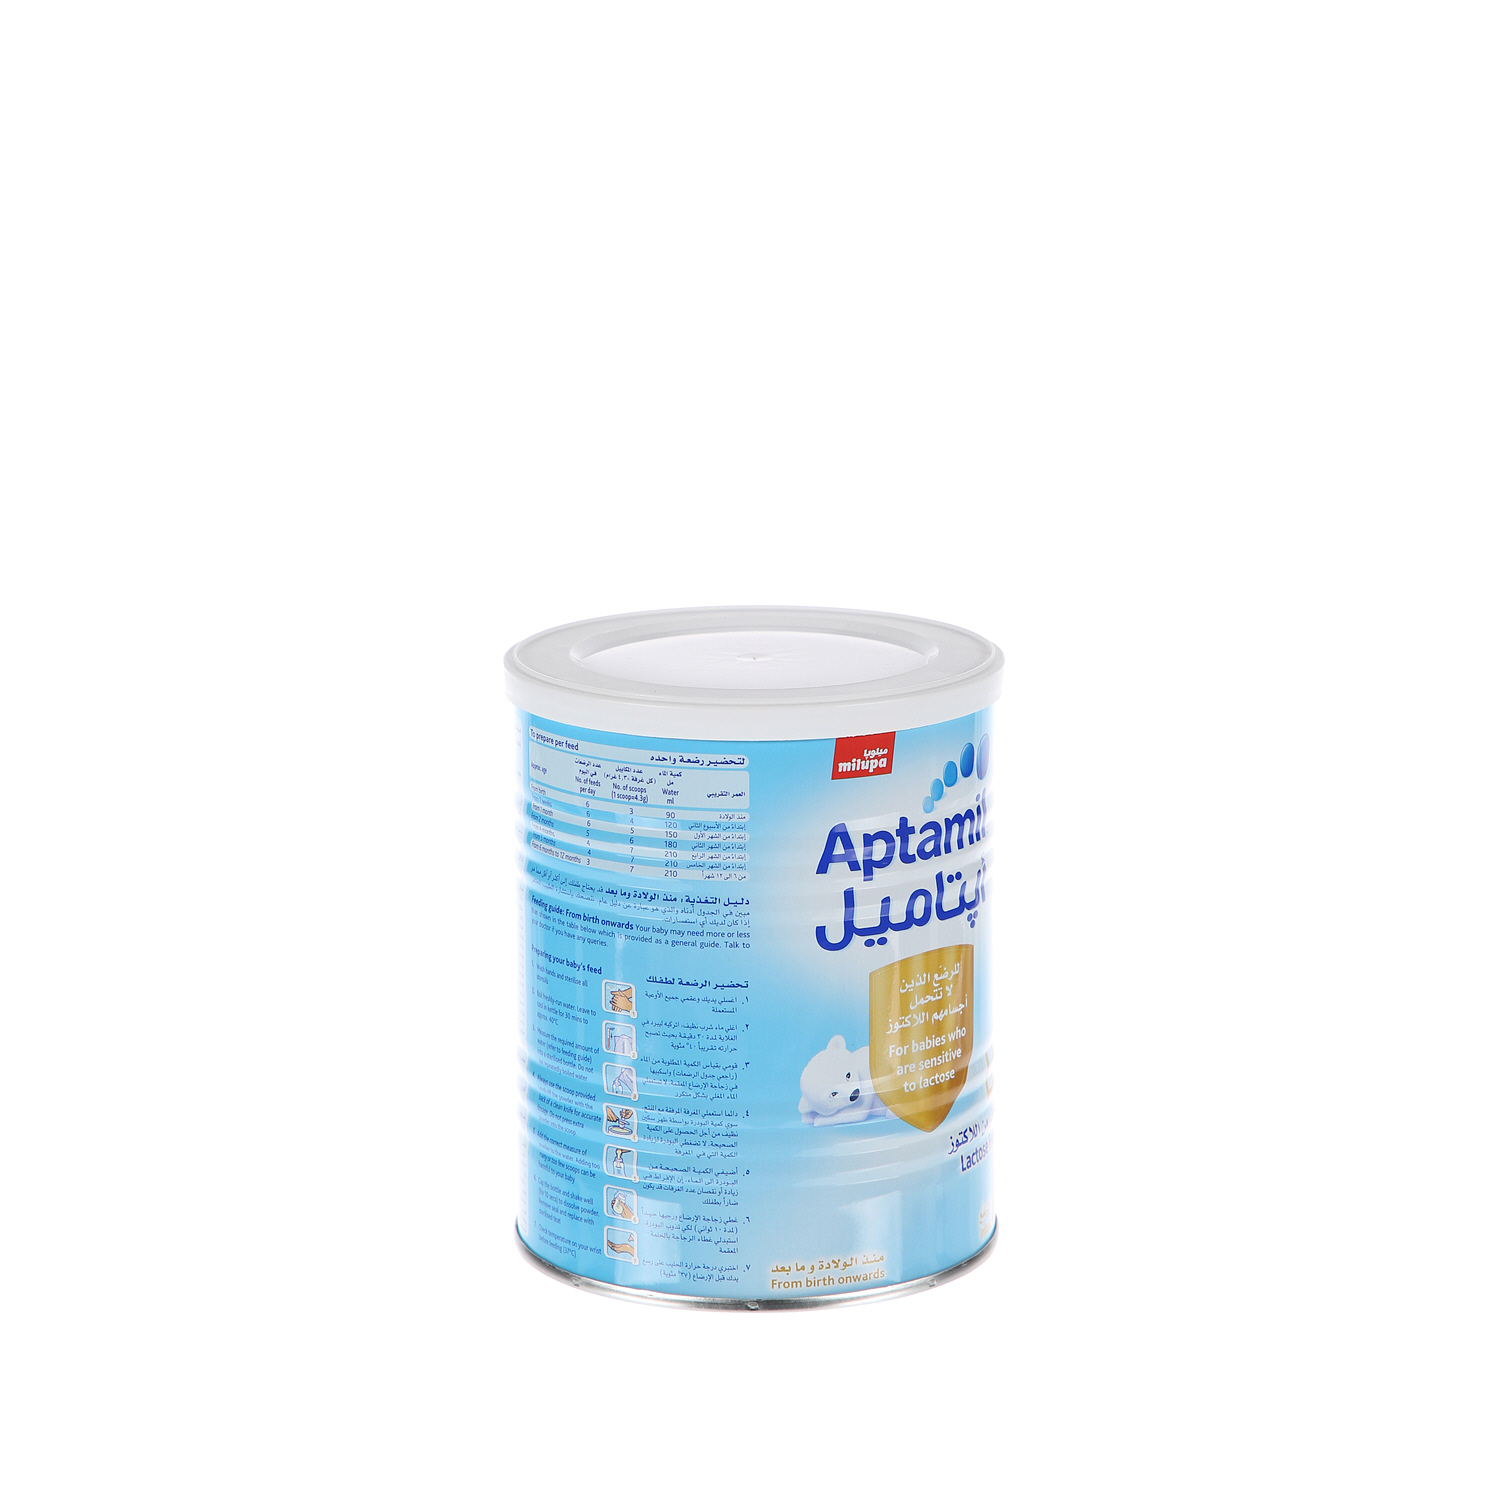 Milupa Aptamil Lactose Free 400 g